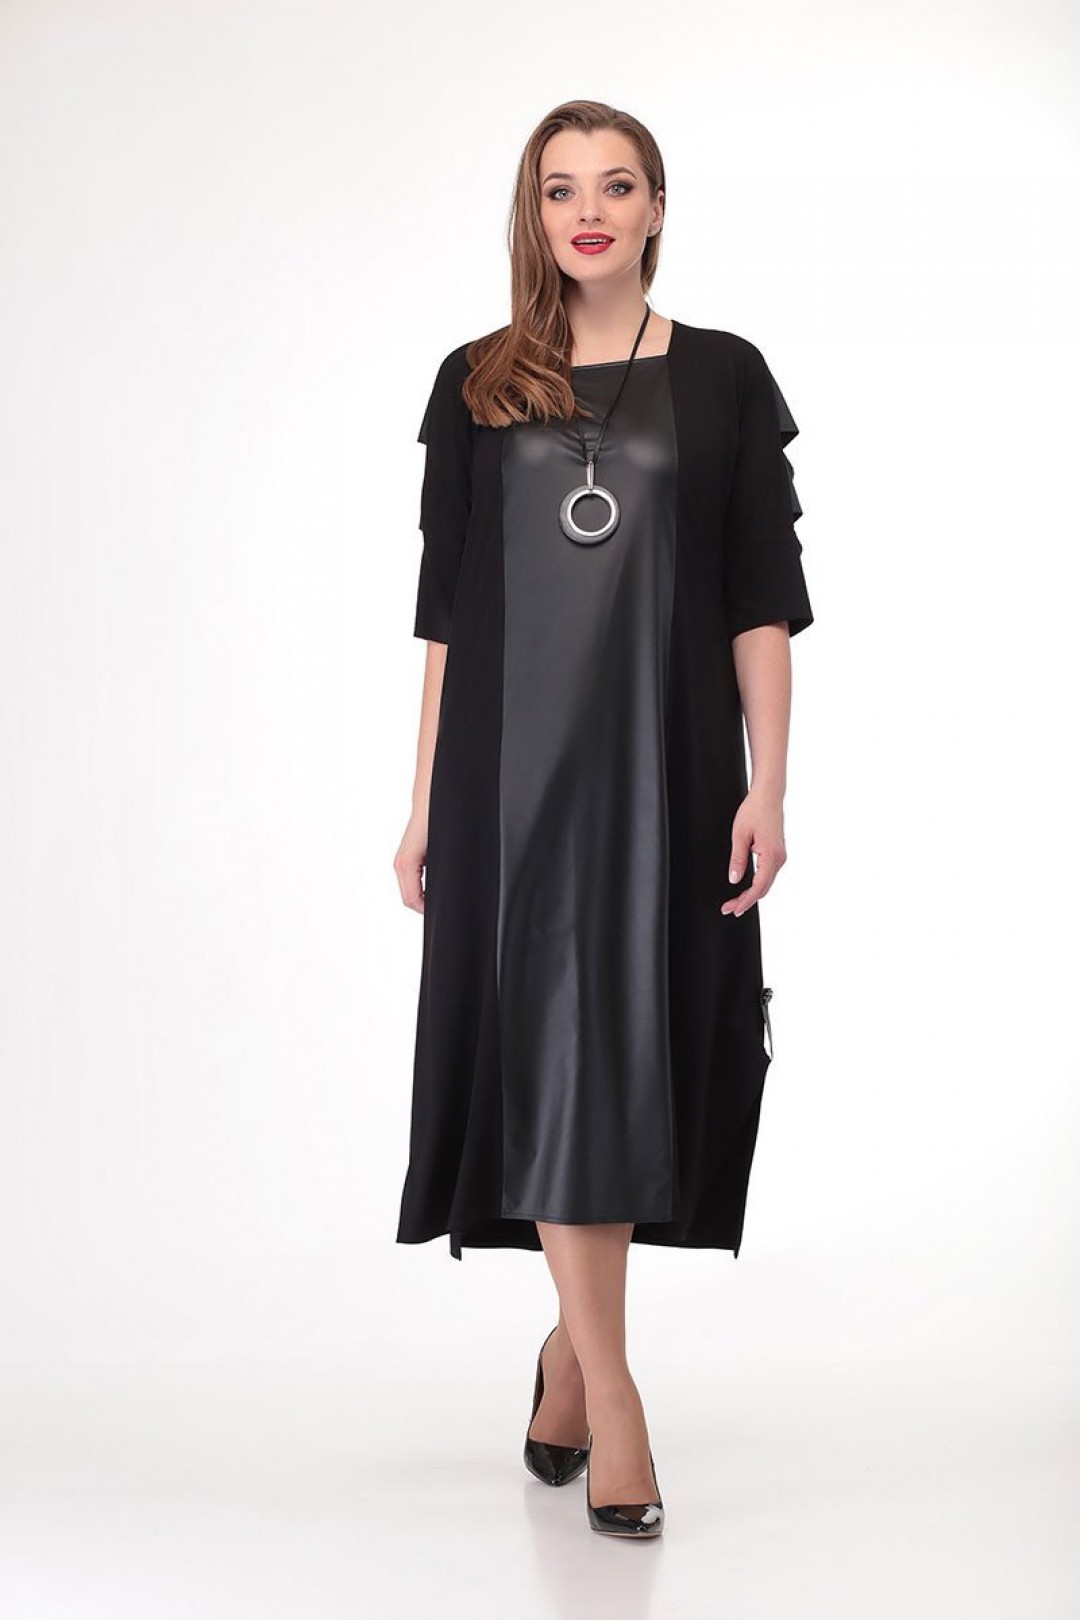 Платье Карина Делюкс В-280 черный